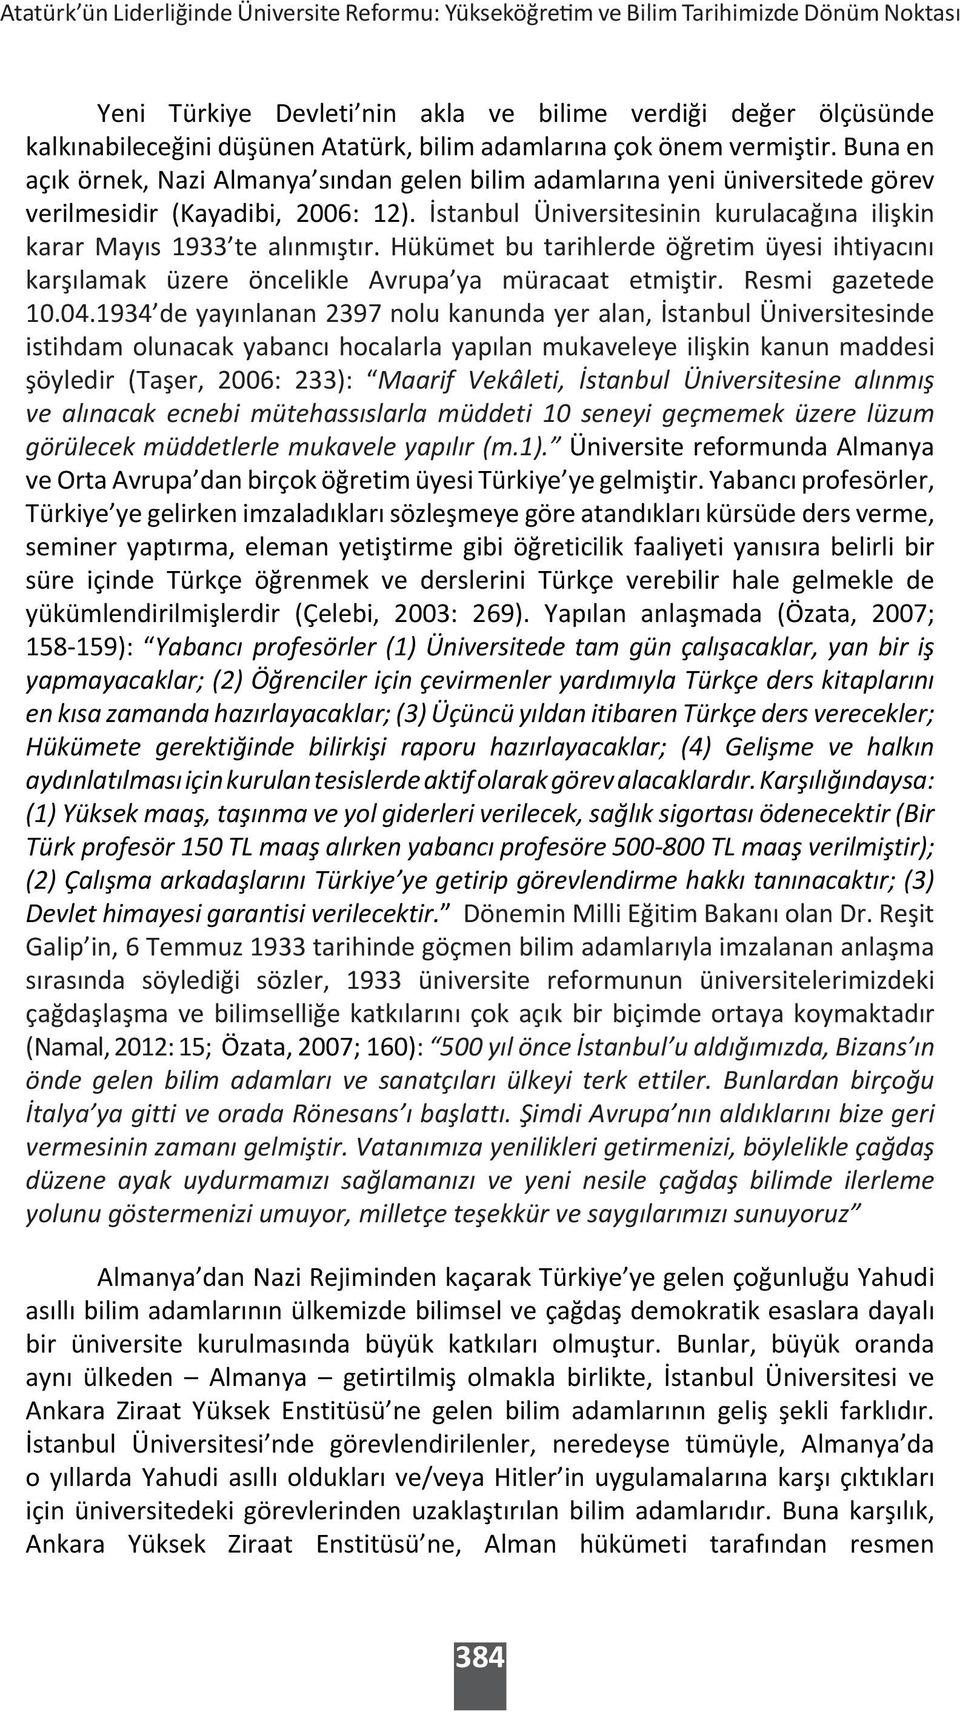 İstanbul Üniversitesinin kurulacağına ilişkin karar Mayıs 1933 te alınmıştır. Hükümet bu tarihlerde öğretim üyesi ihtiyacını karşılamak üzere öncelikle Avrupa ya müracaat etmiştir. Resmi gazetede 10.